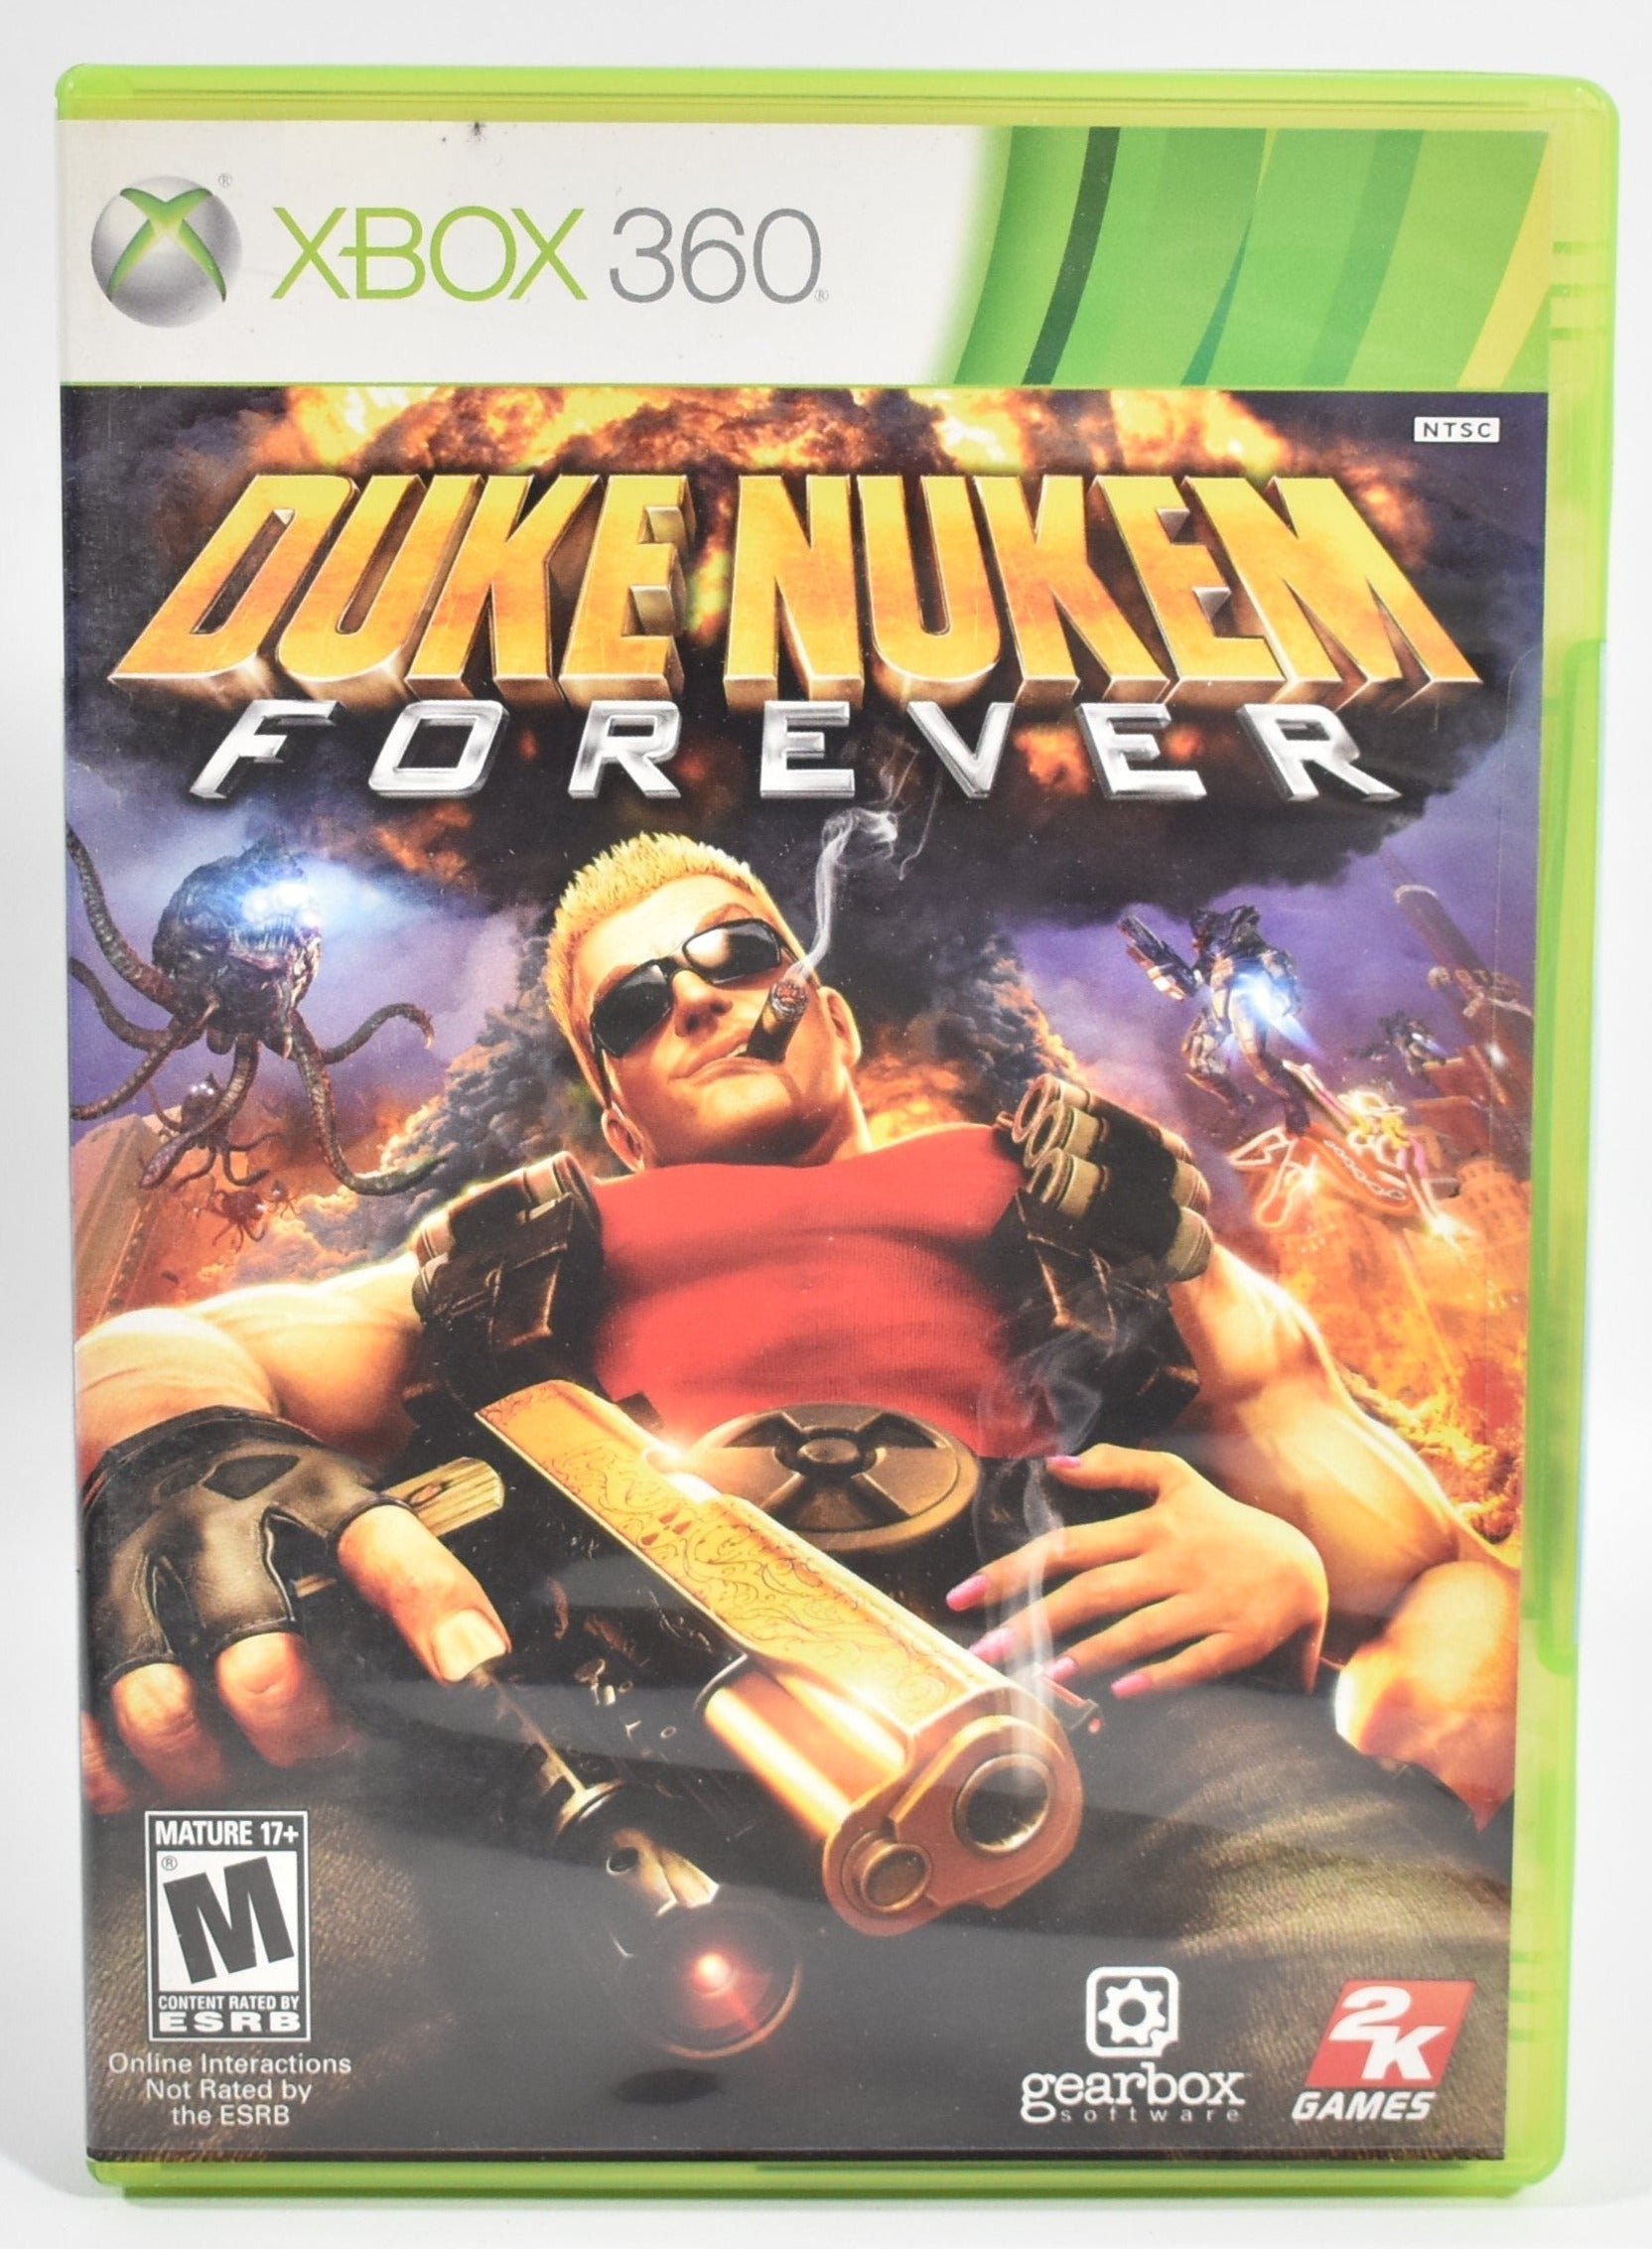 Xbox 360 Video Game Duke Nukem Forever 2k Games USED